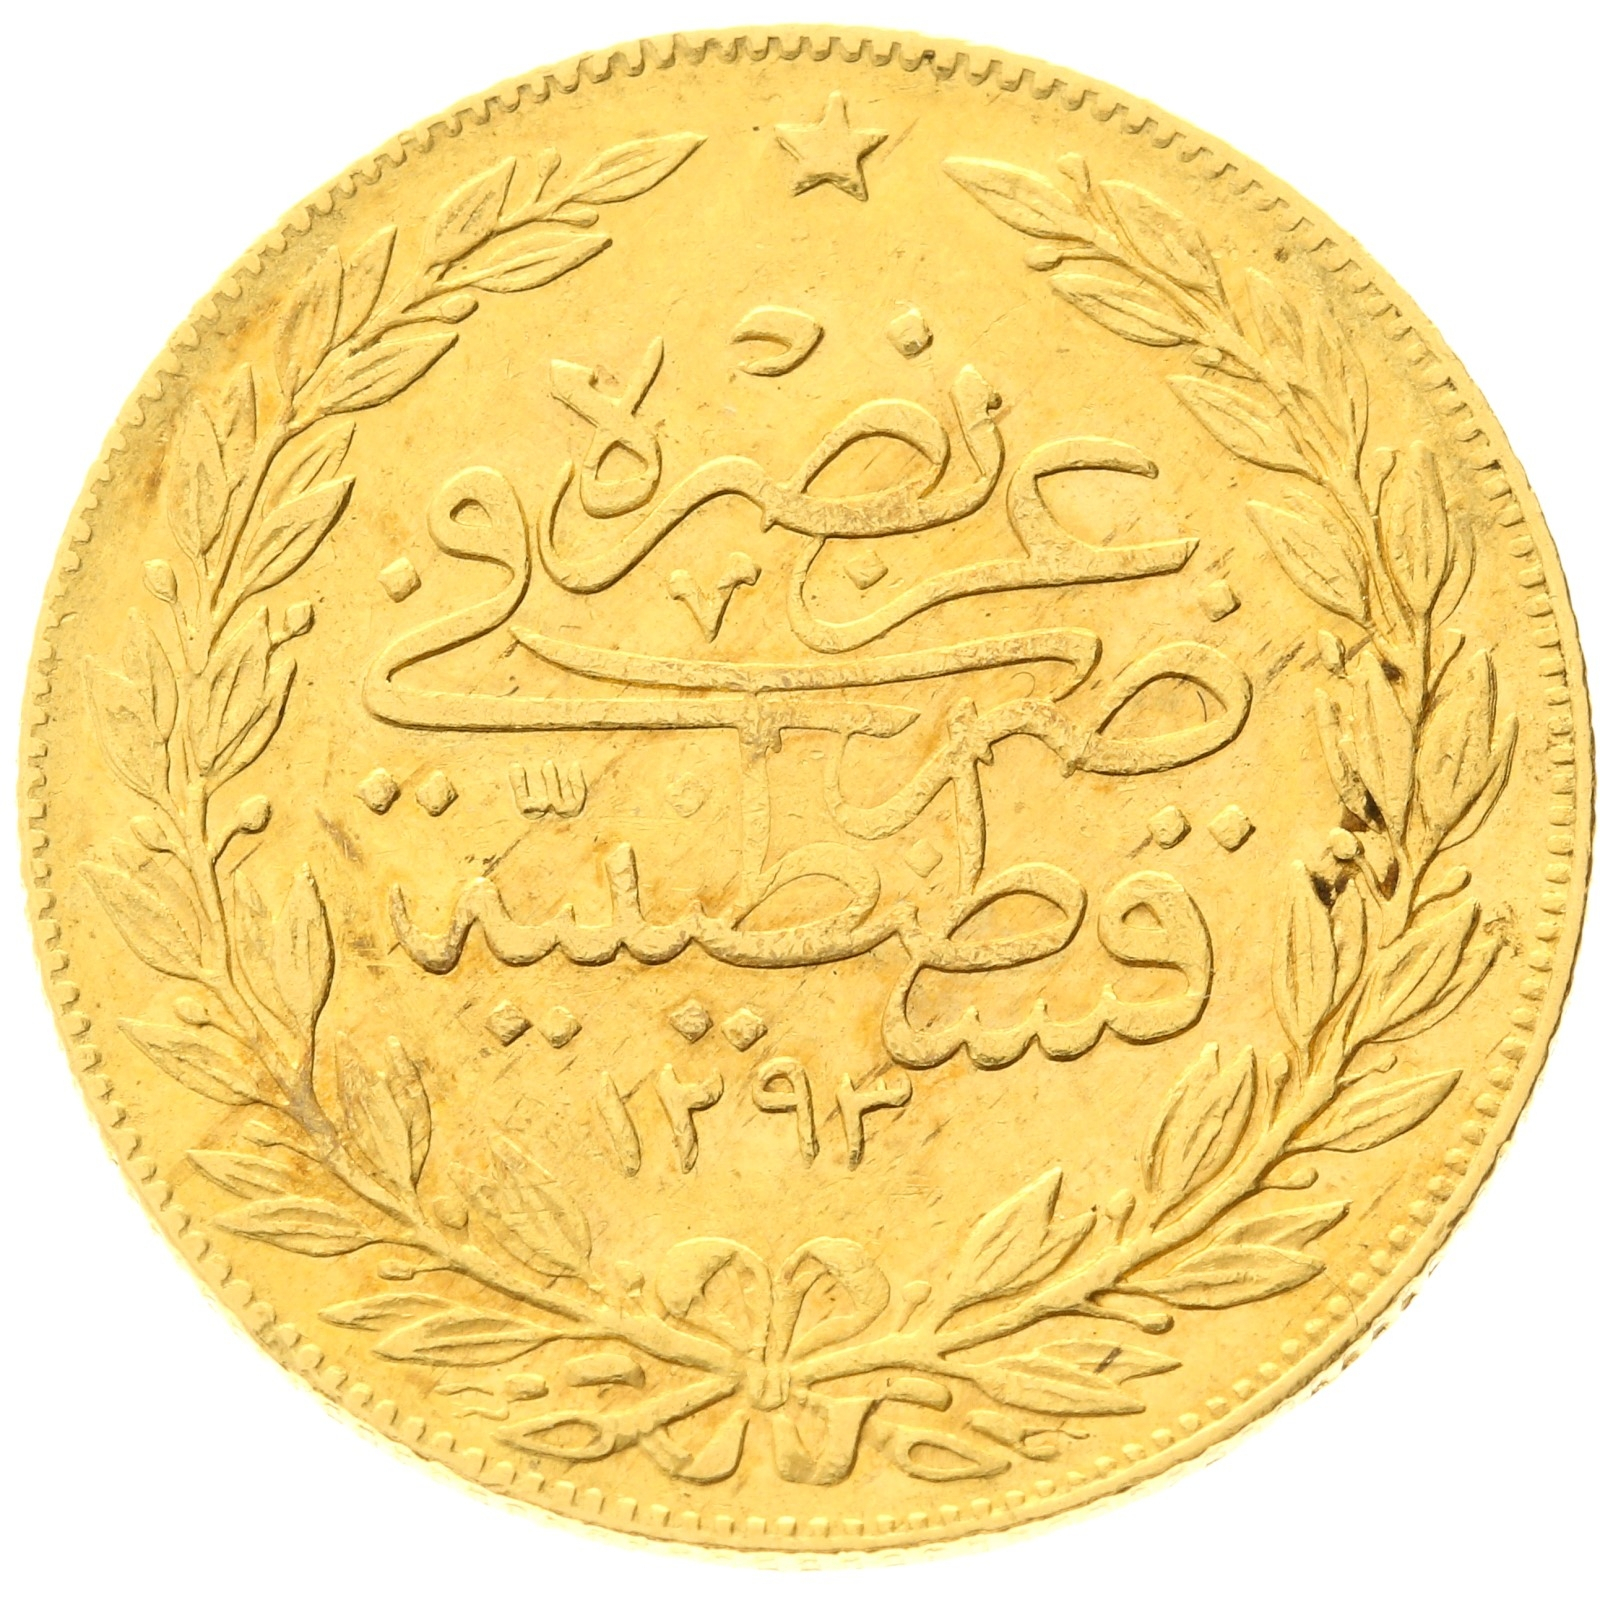 Ottoman Empire - 100 Kurush - 1293/31 - (1905) - Abdulhamid II